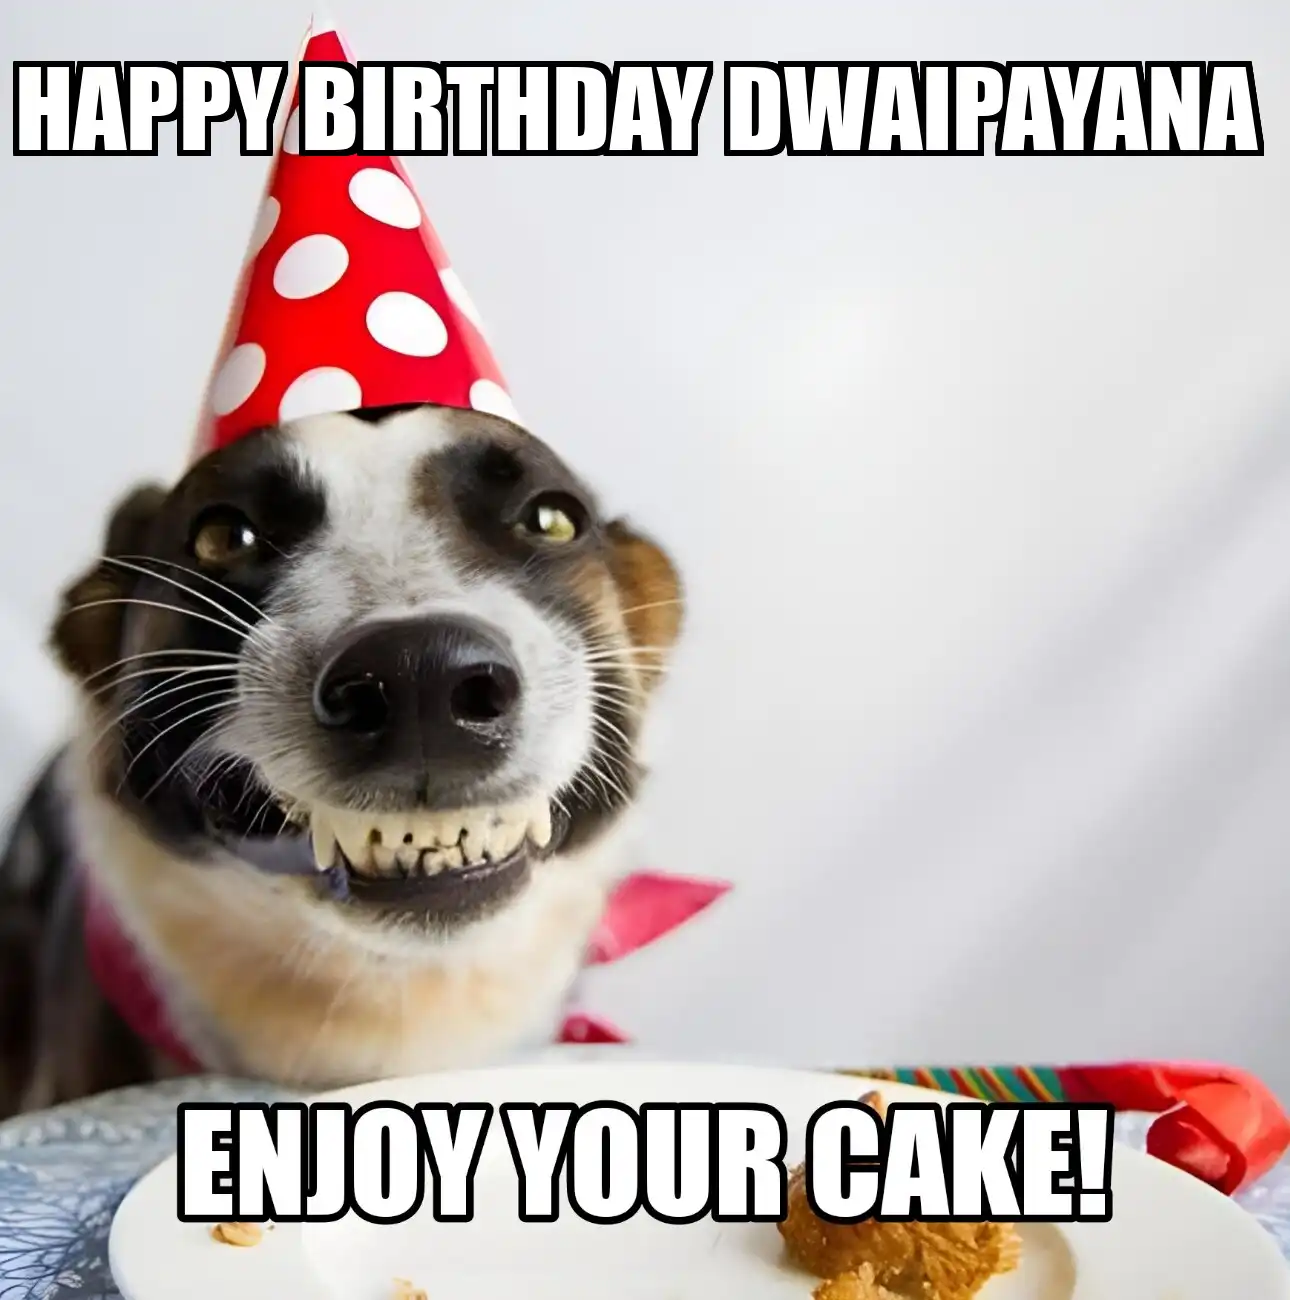 Happy Birthday Dwaipayana Enjoy Your Cake Dog Meme